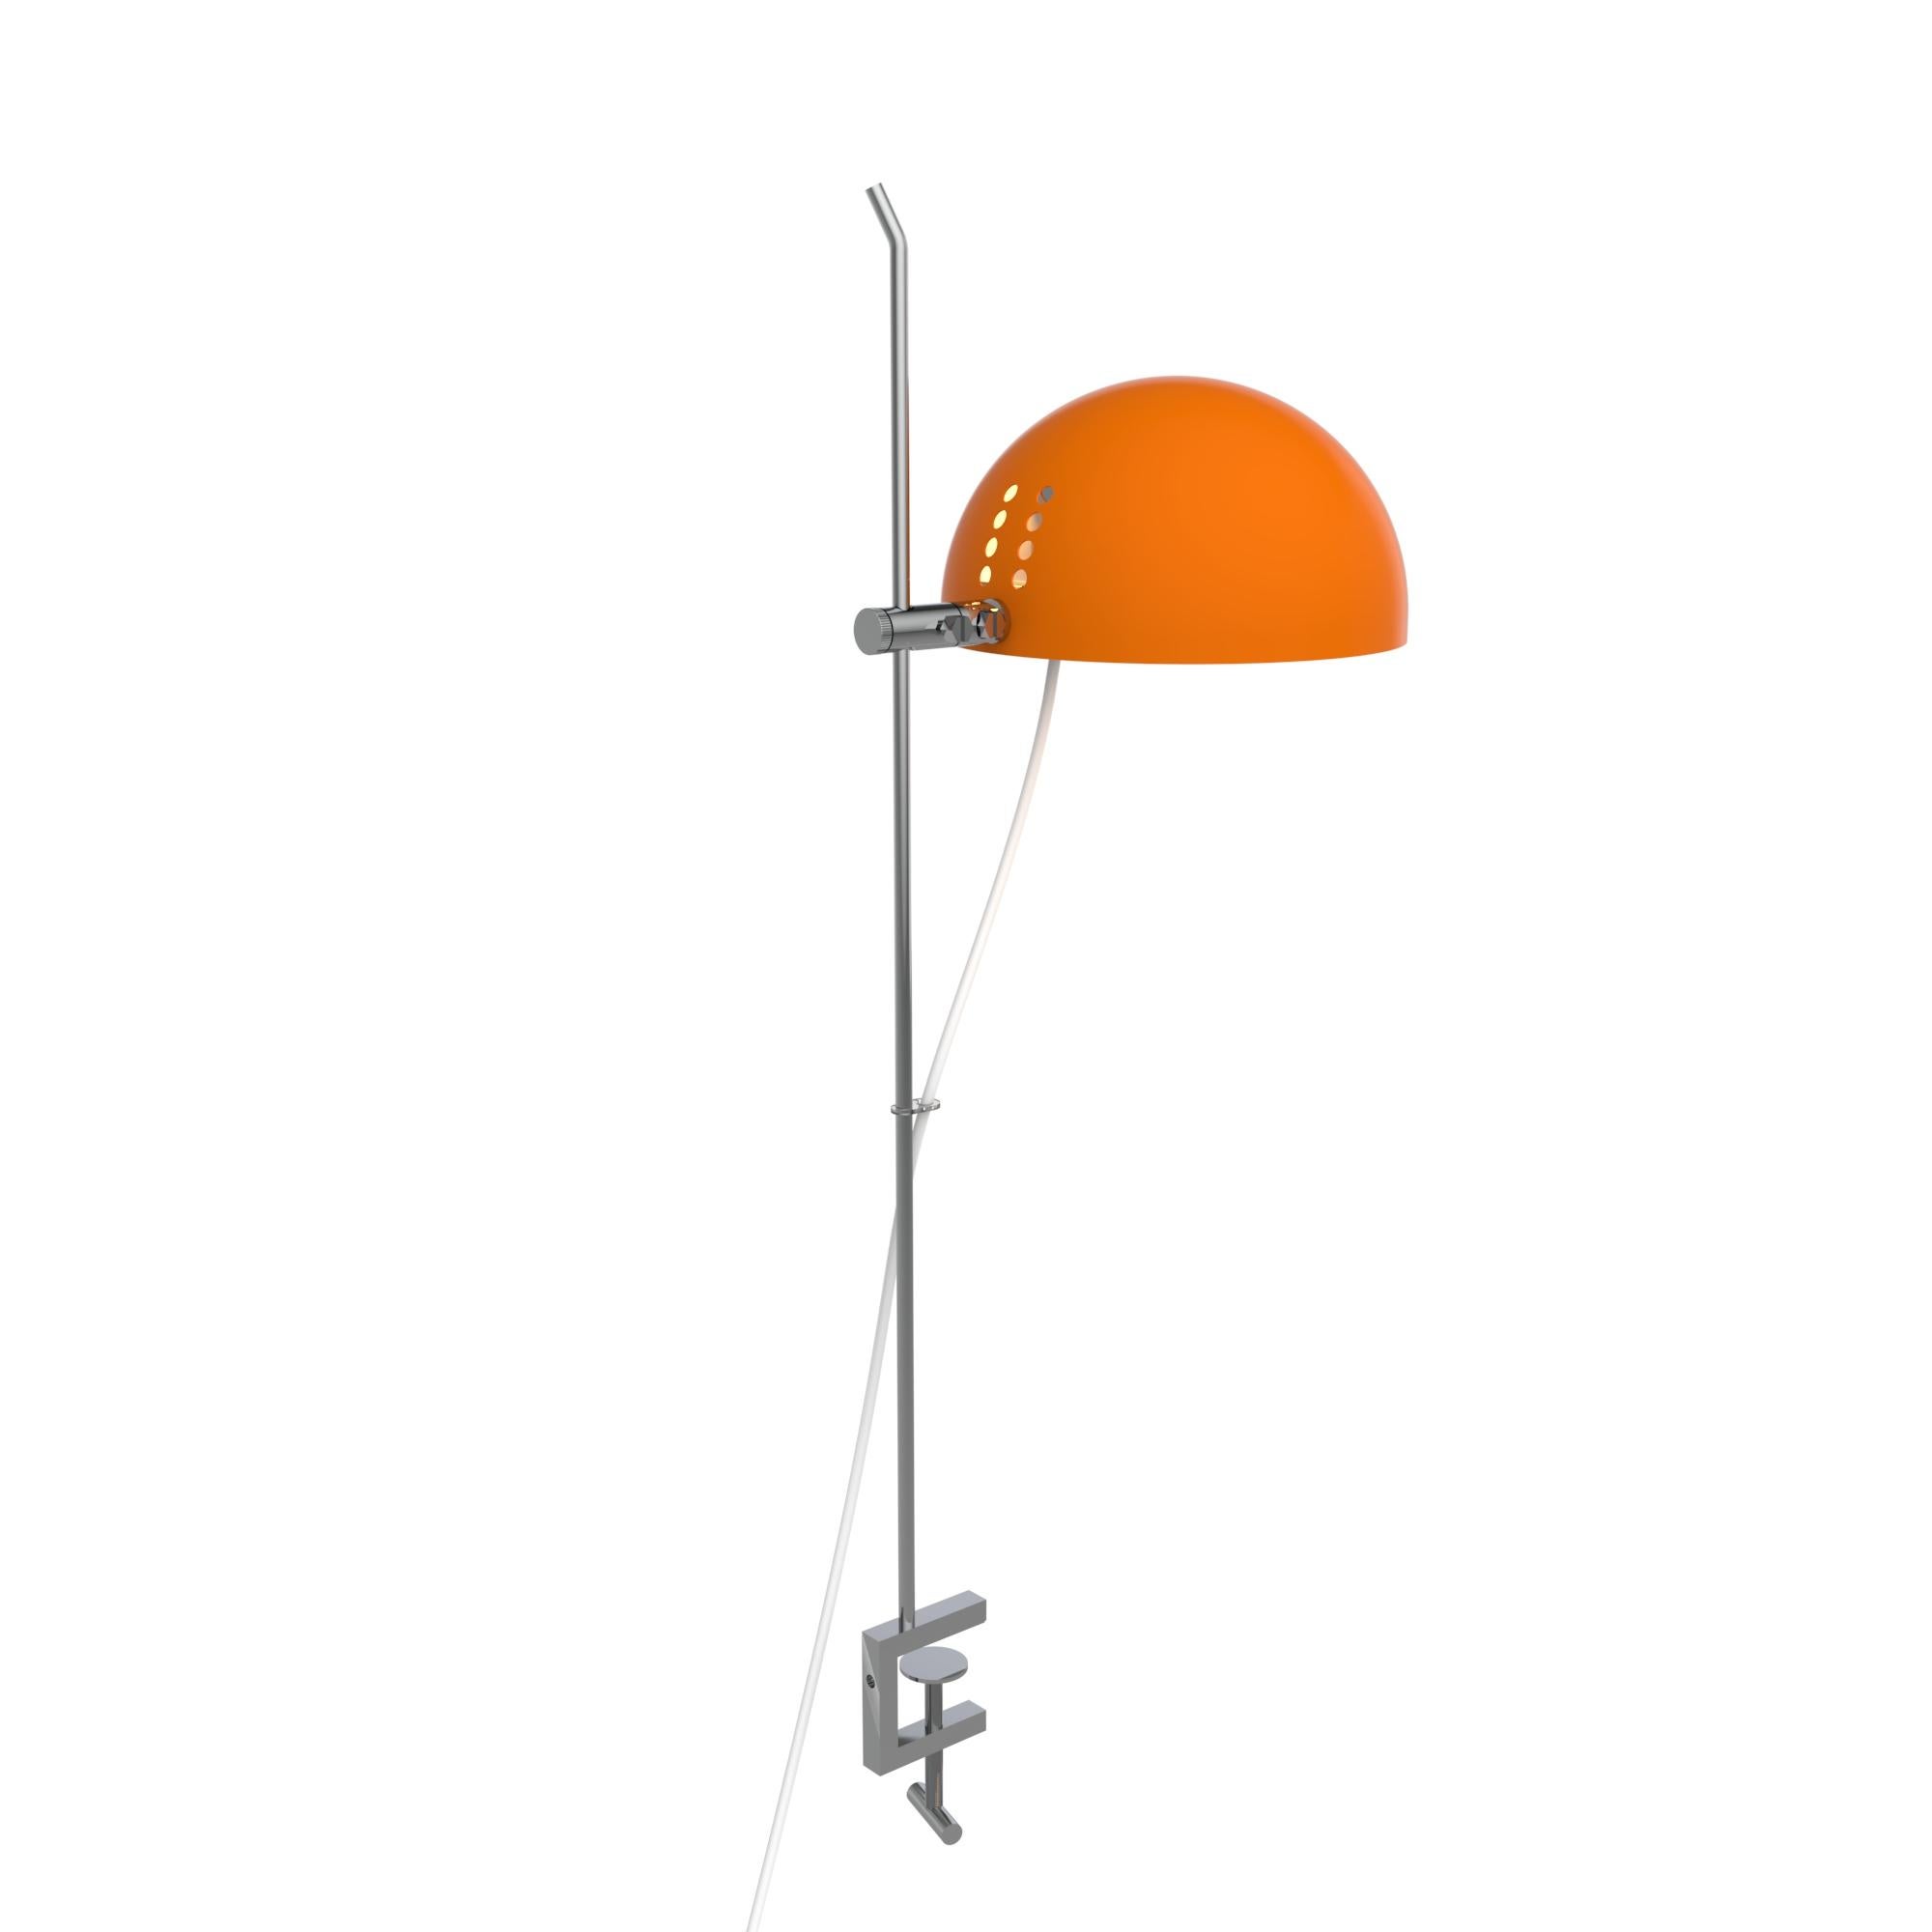 Alain Richard 'A21' Desk Lamp in Orange for Disderot For Sale 7